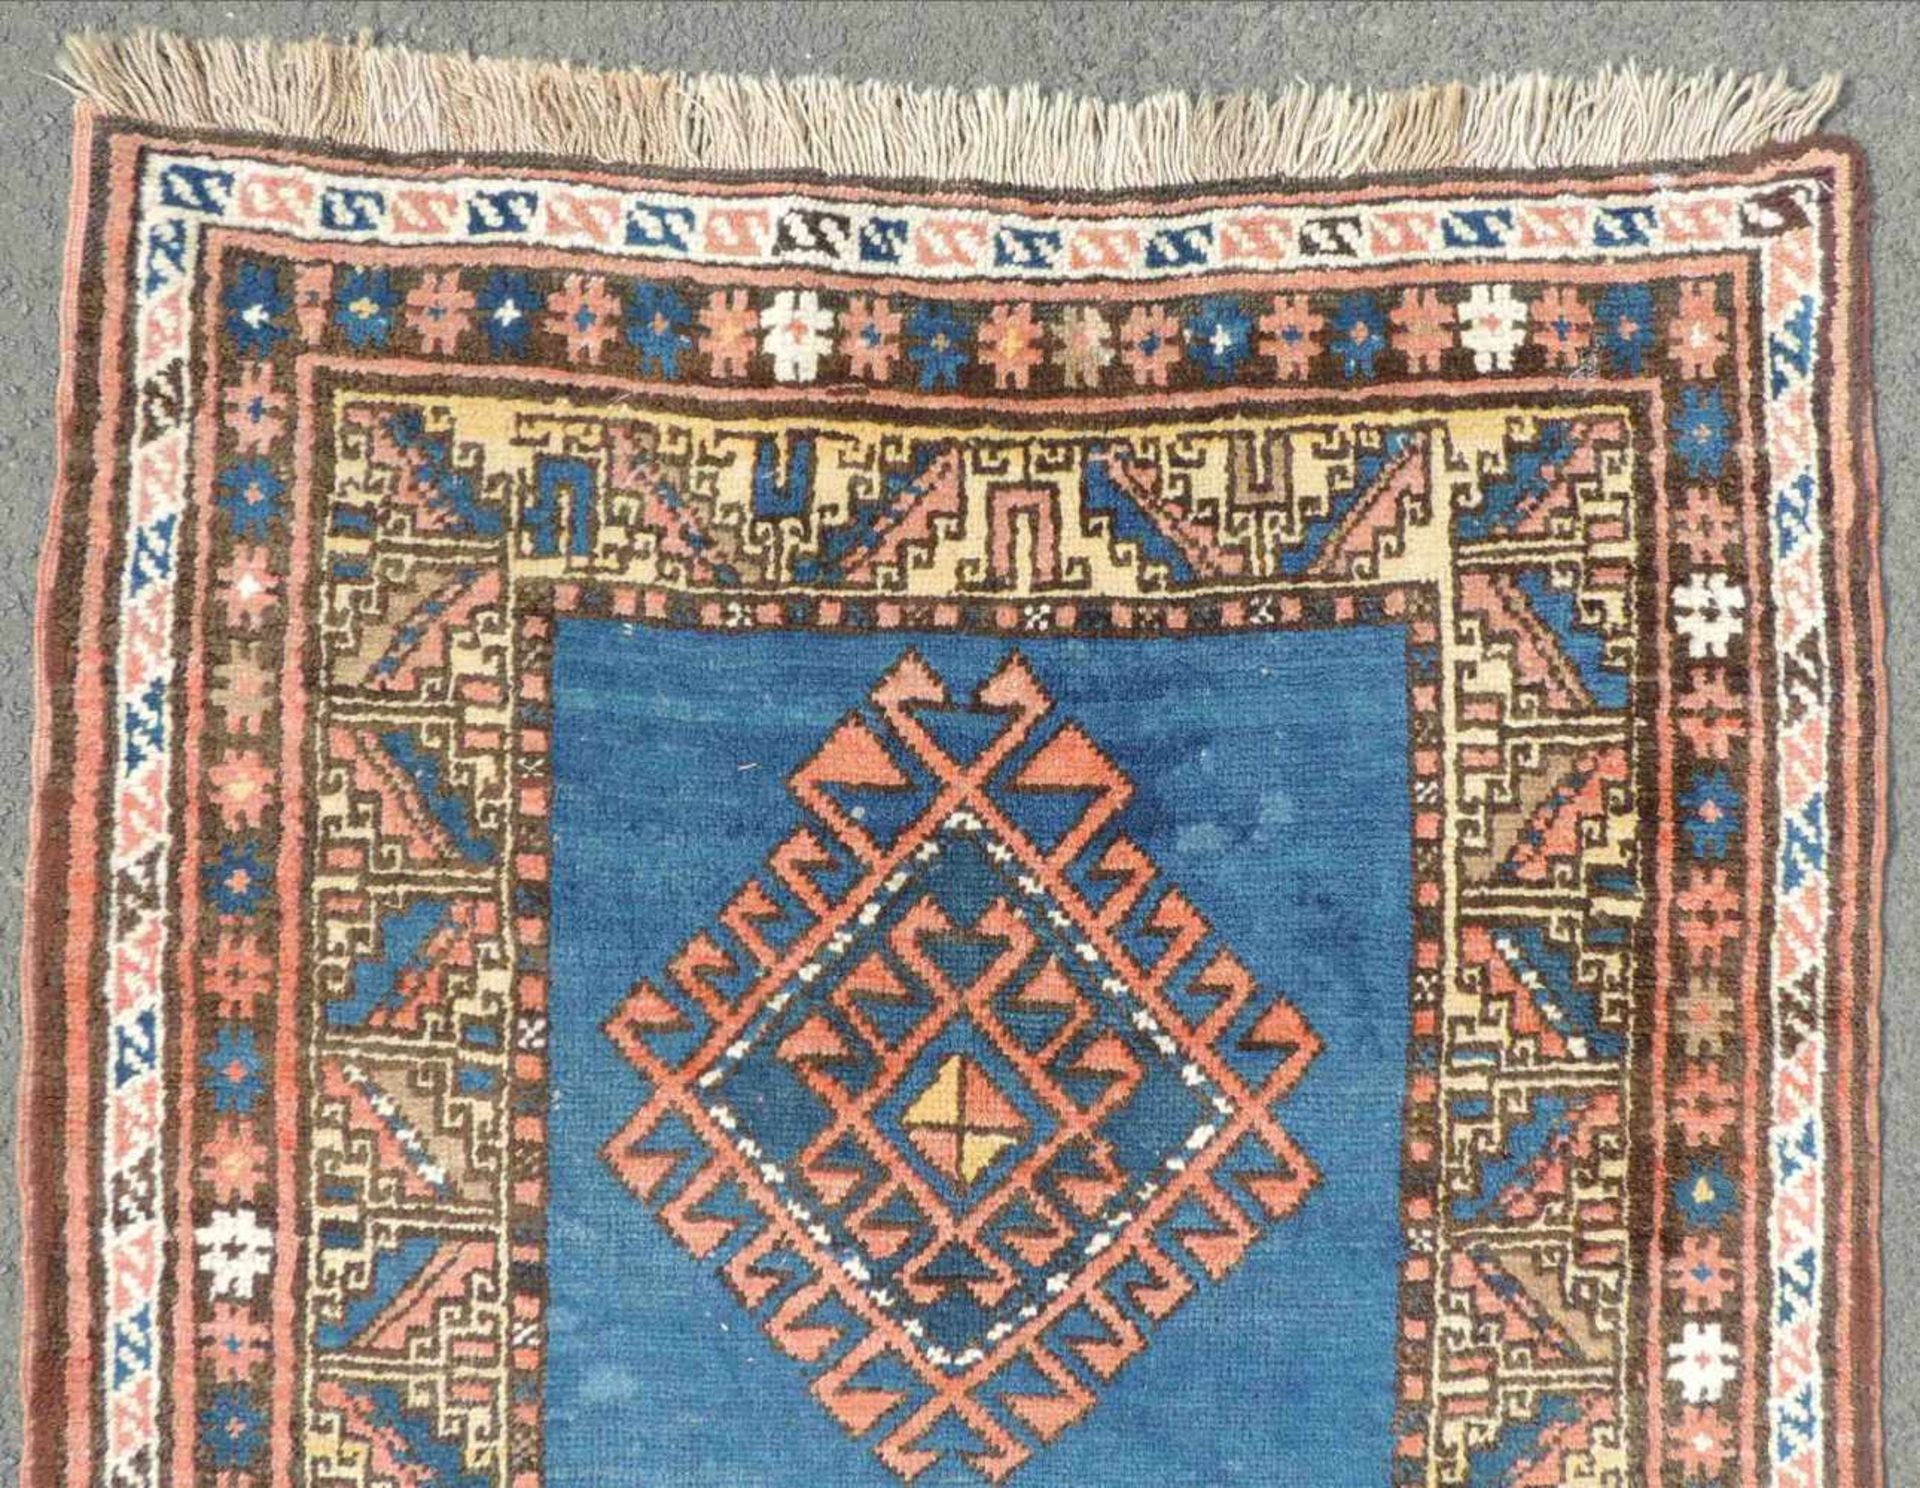 Kasak Orientteppich. Kaukasus. Antik, um 1910. 182 cm x 103 cm. Handgeknüpft. Wolle auf Wolle. - Image 4 of 7